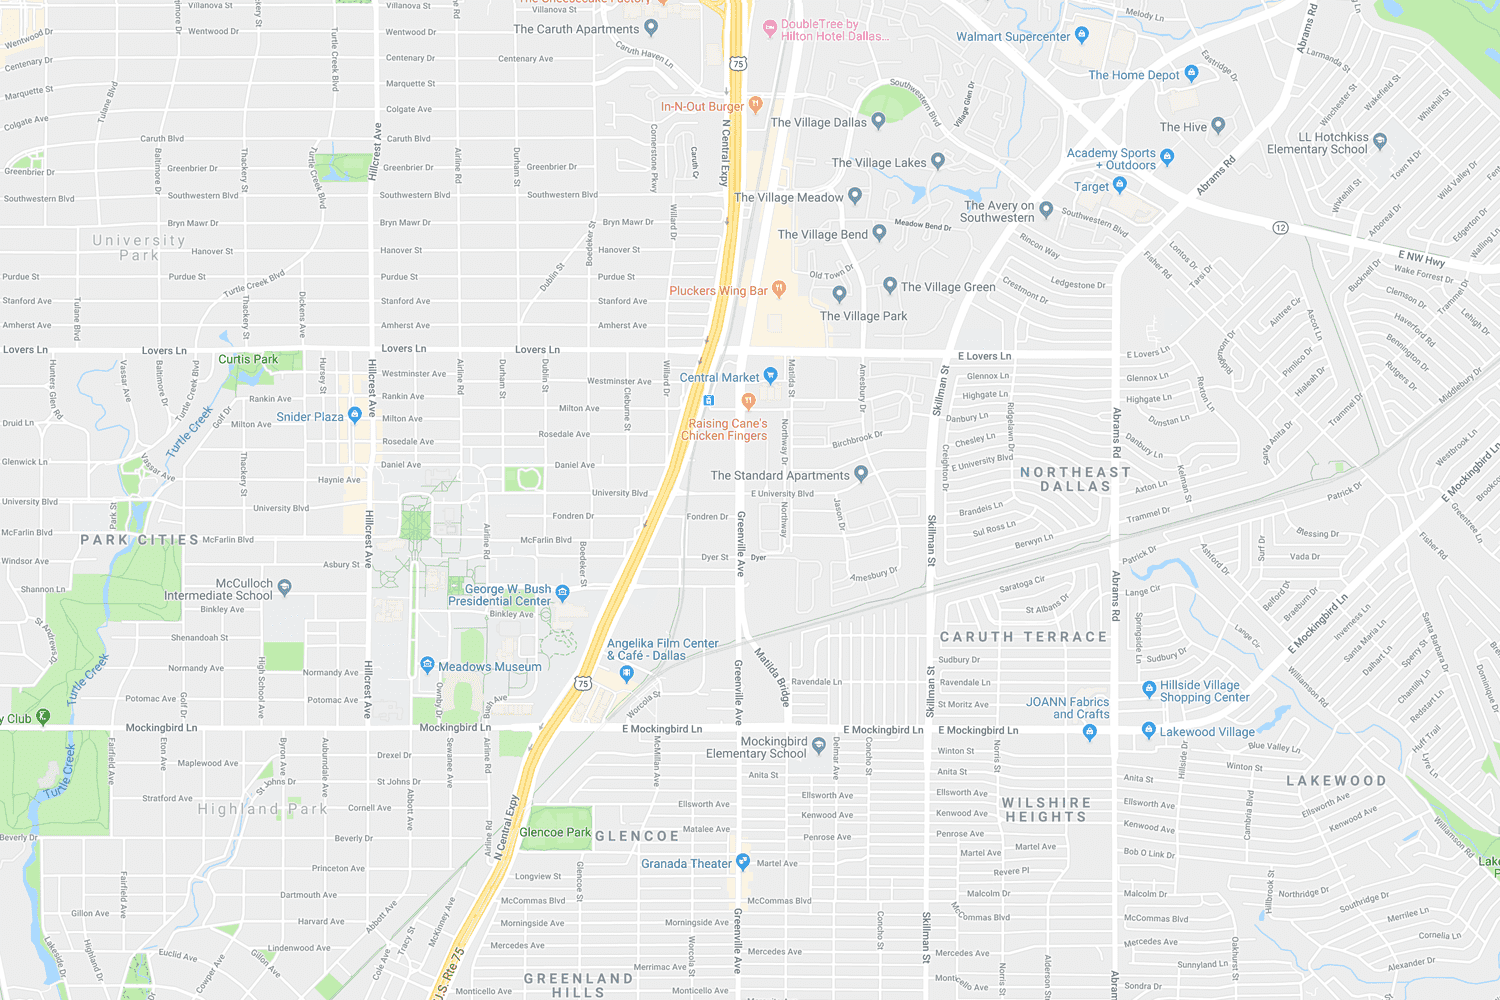 Map of North Dallas location